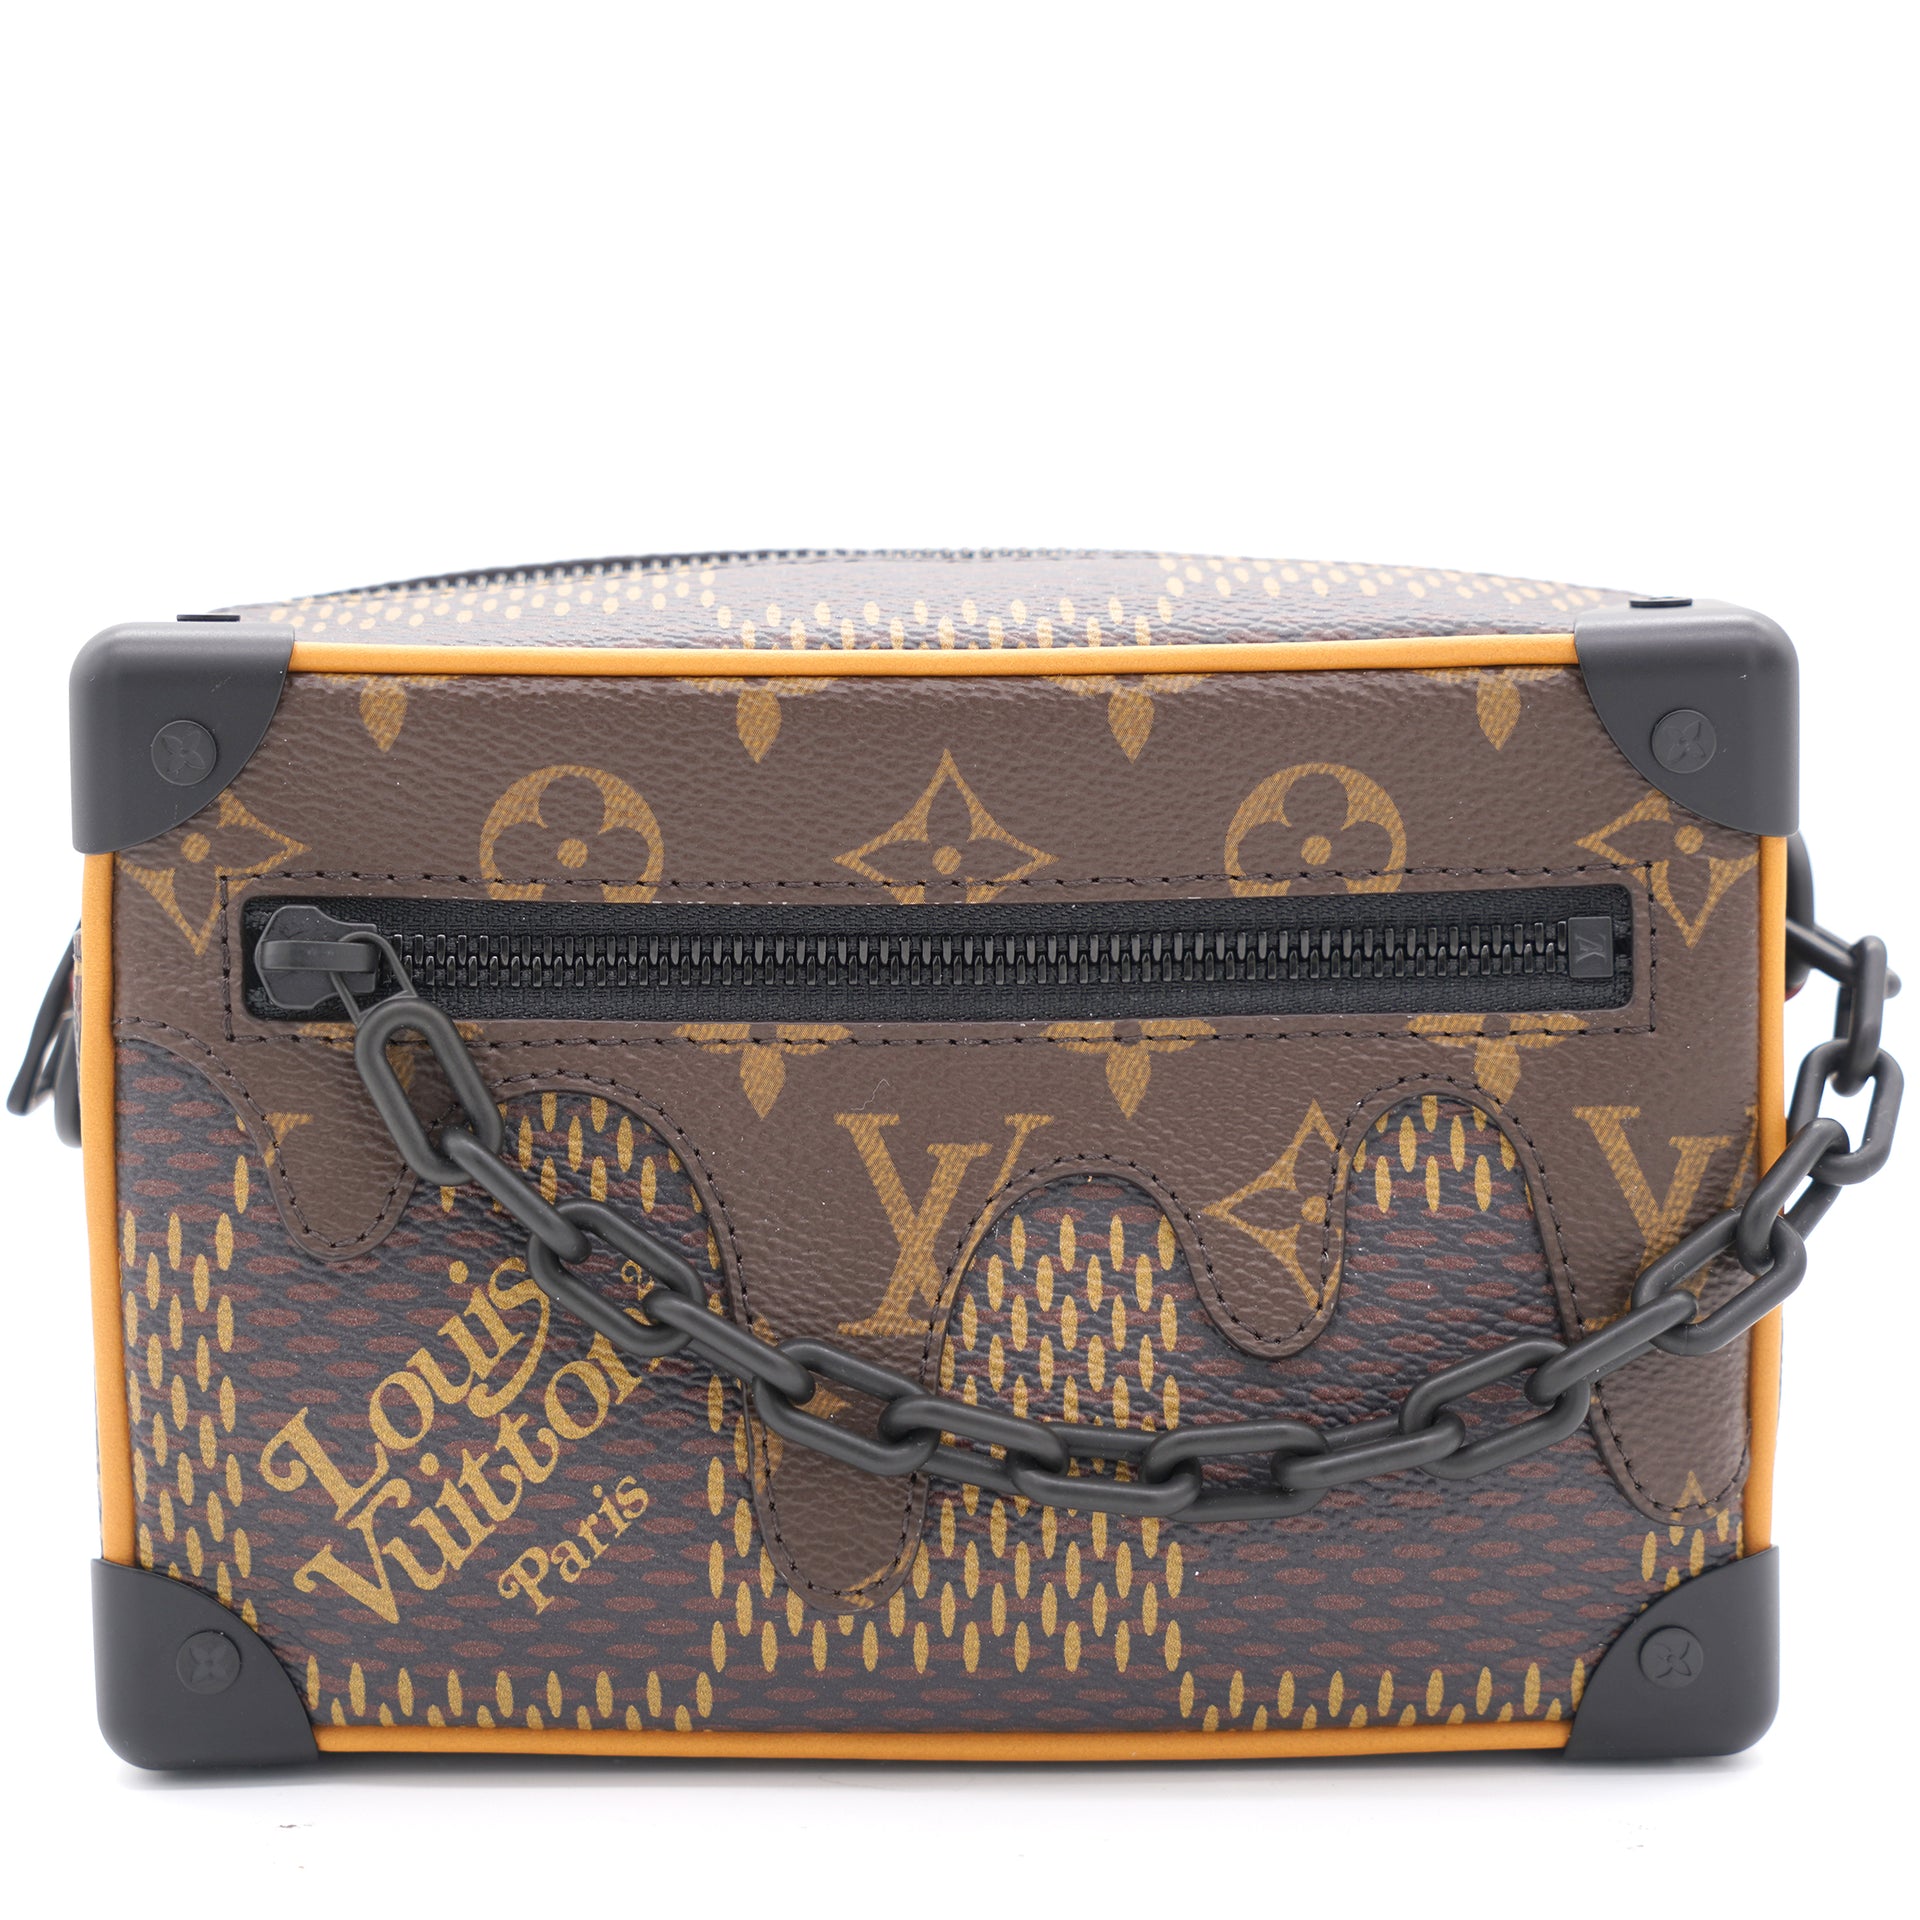 Louis Vuitton Men's Soft Trunk Mini Bag